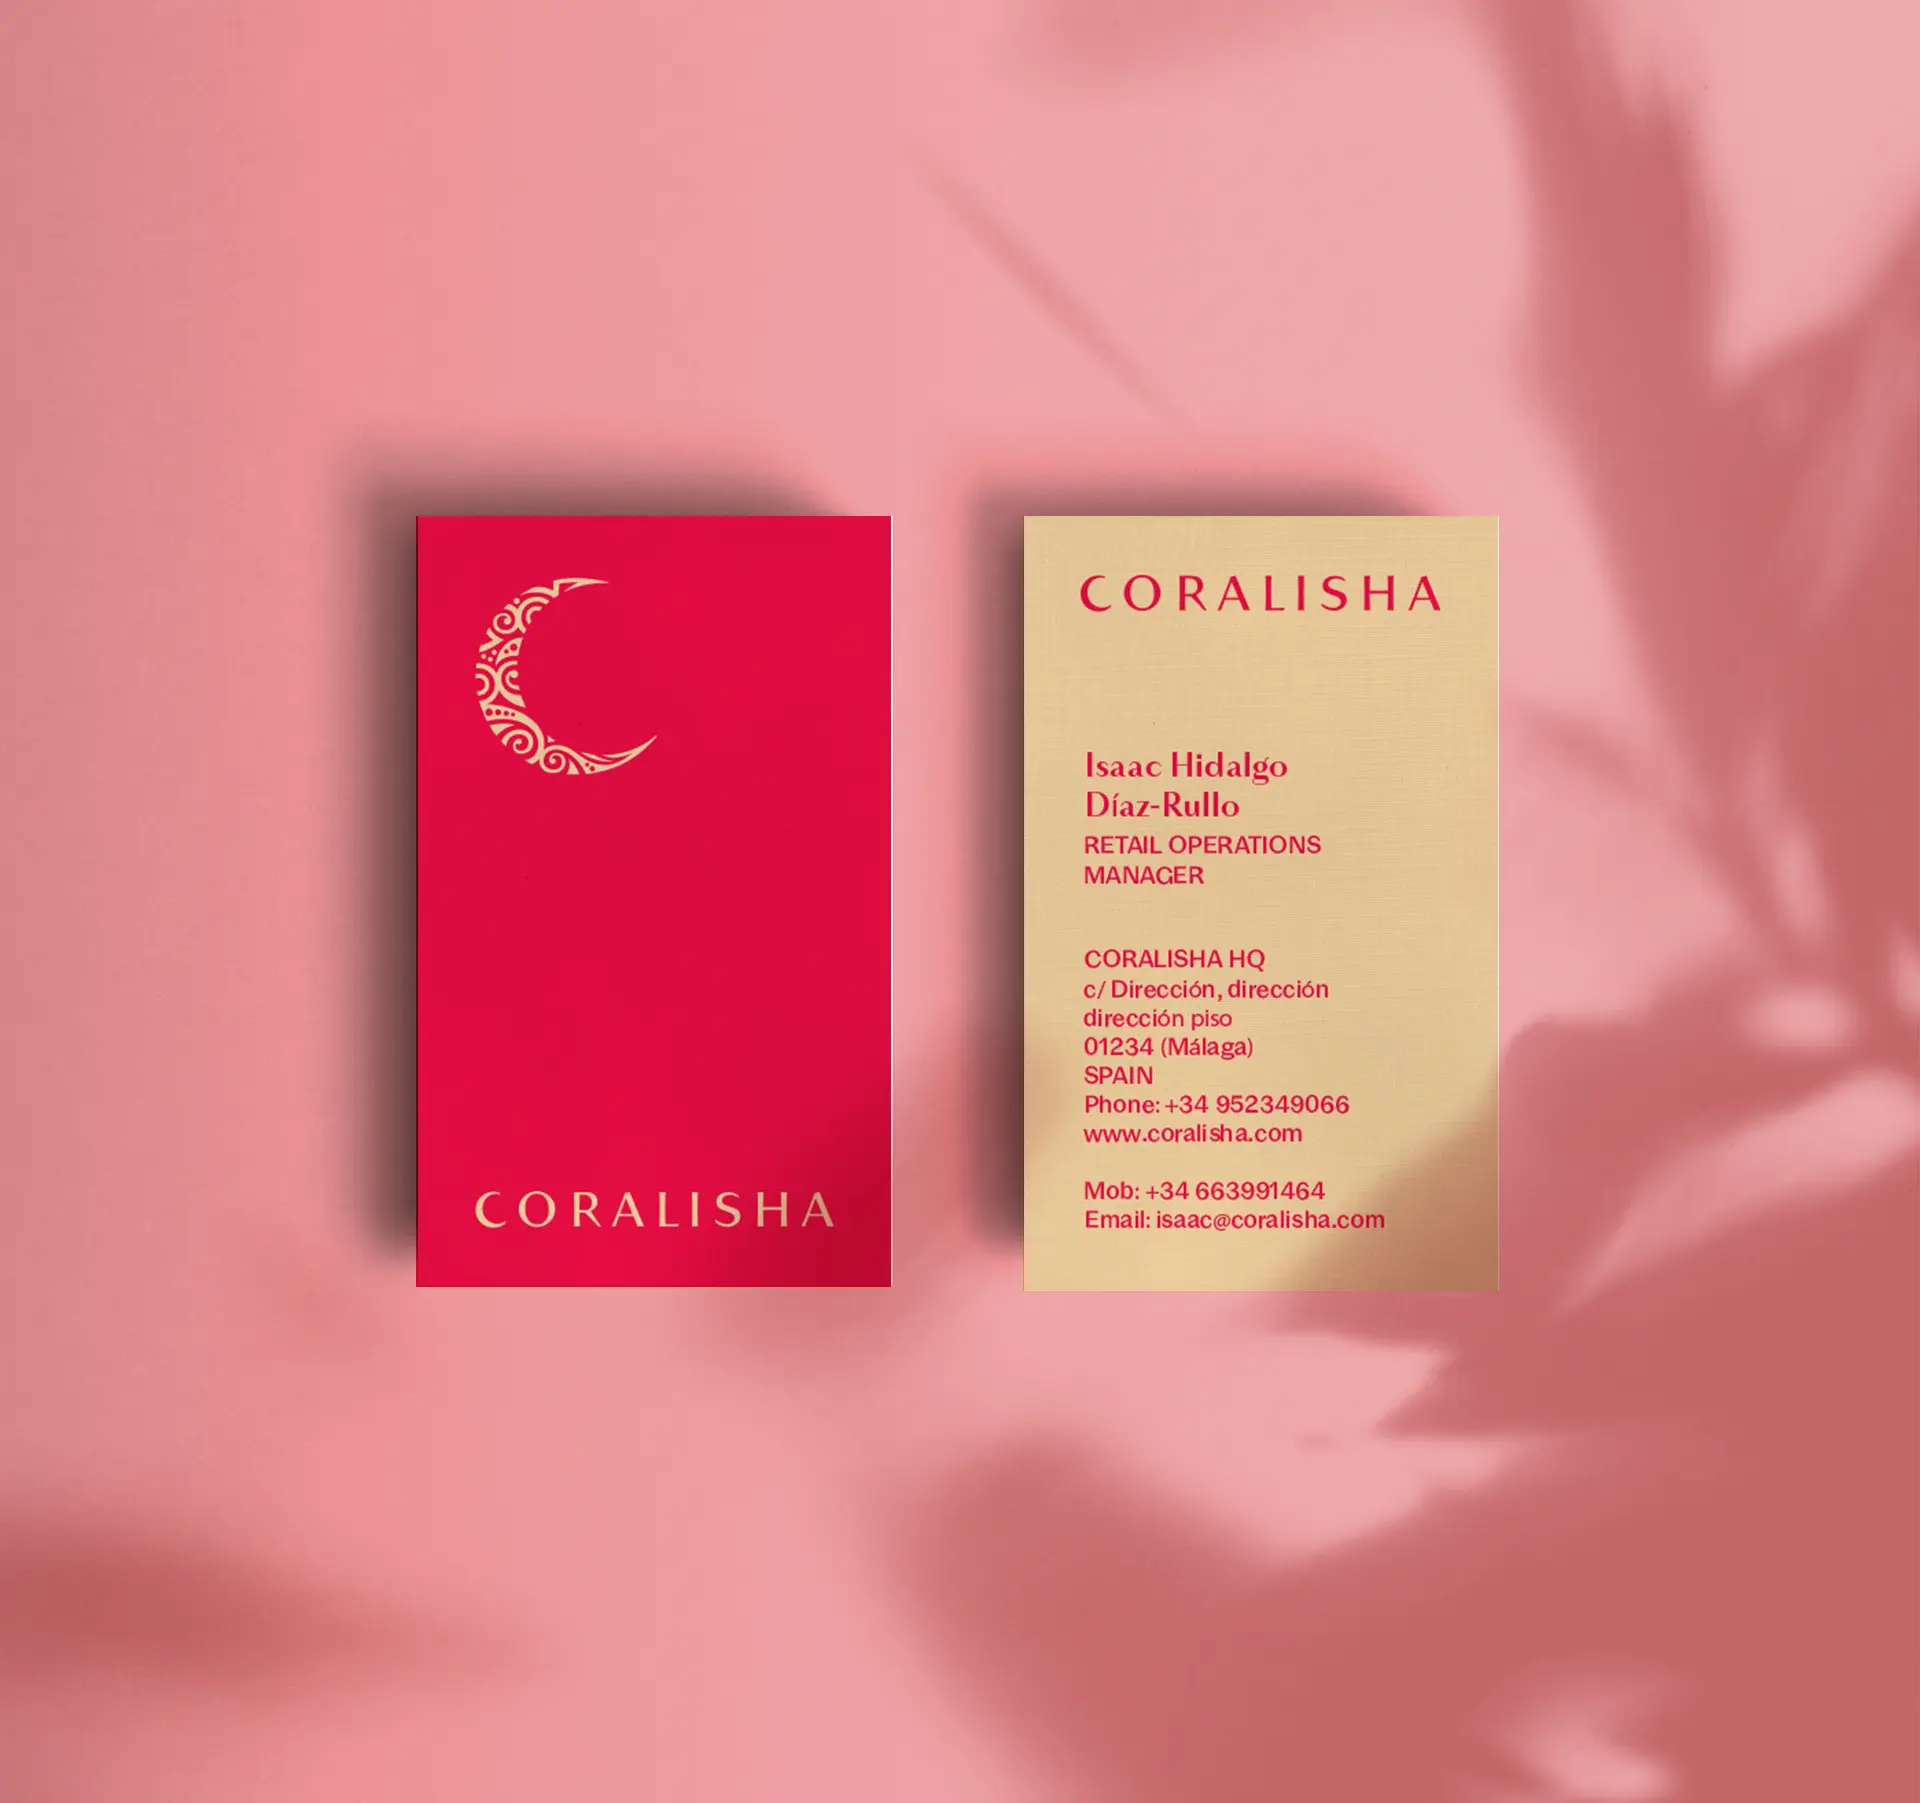 Tarjeta corporativas en rojo y beige de la marca Coralisha sobre fondo rosa